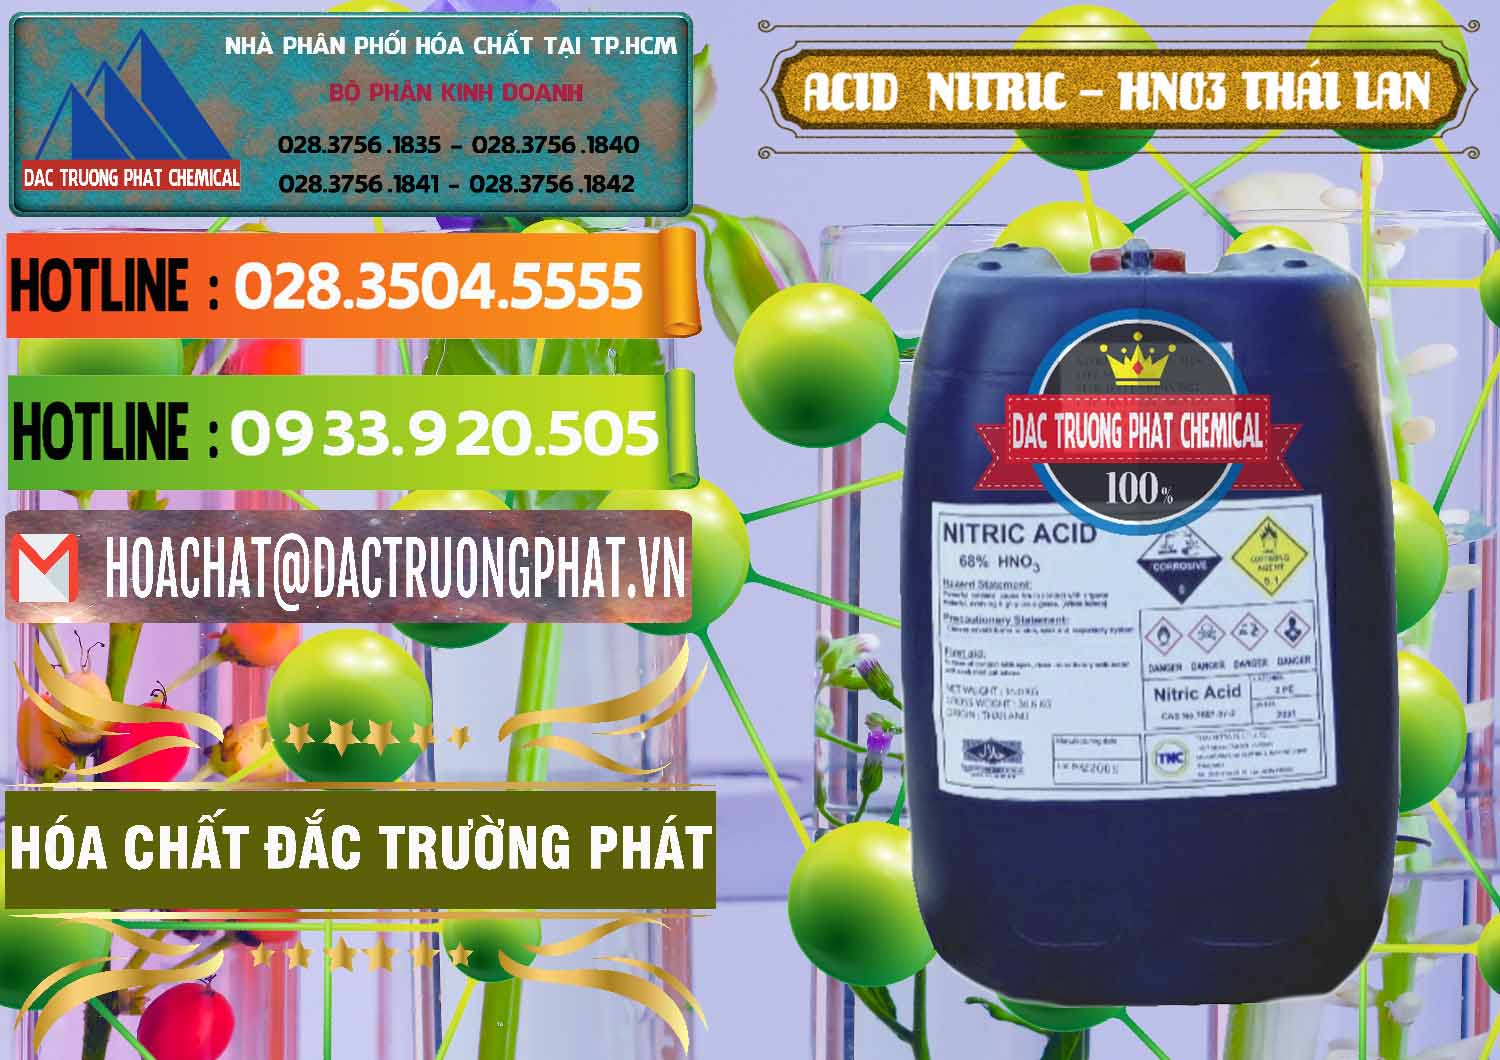 Đơn vị chuyên cung cấp _ bán Acid Nitric – Axit Nitric HNO3 Thái Lan Thailand - 0344 - Công ty chuyên cung cấp _ nhập khẩu hóa chất tại TP.HCM - cungcaphoachat.com.vn